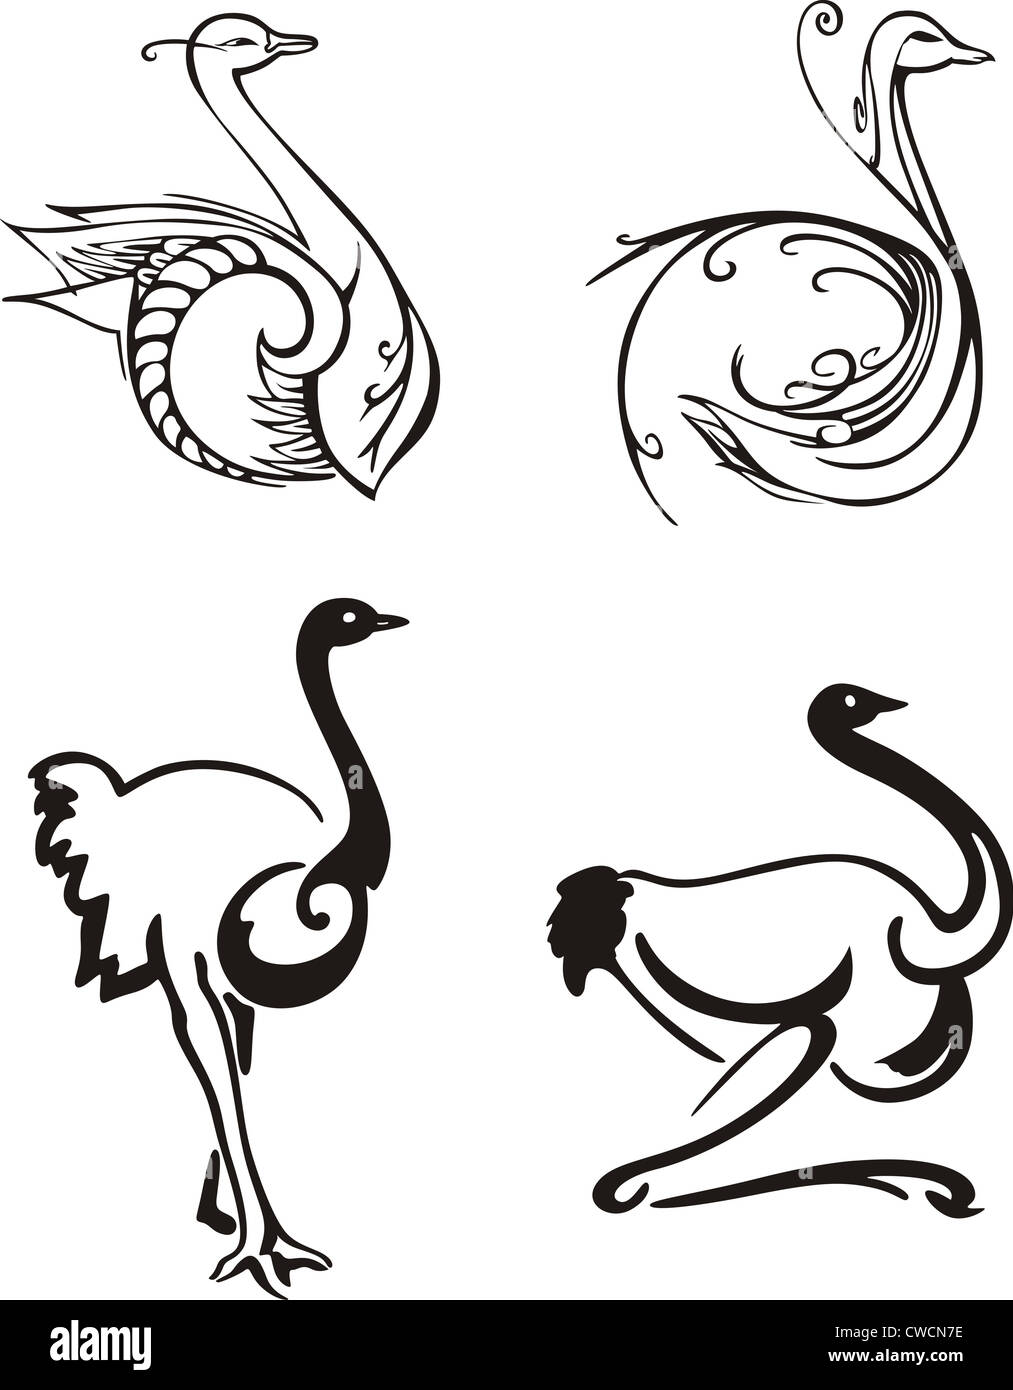 Oiseaux stylisés. Série d'illustrations vectorielles en noir et blanc. Banque D'Images